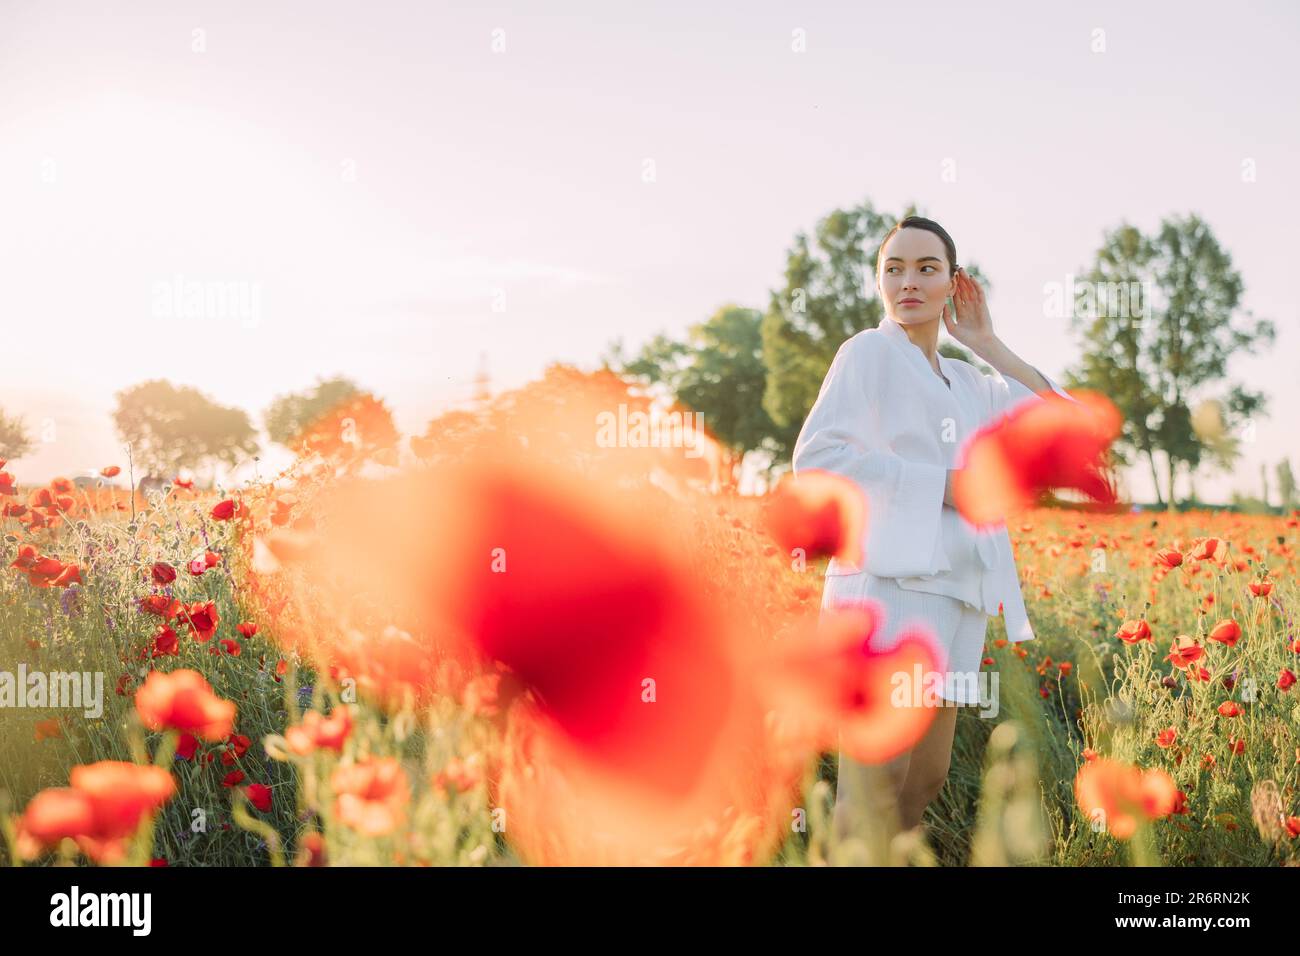 Giovane donna in abiti bianchi che cammina e si gode tra poppies fiorito prato al tramonto. Immagine con spazio di copia. Foto Stock